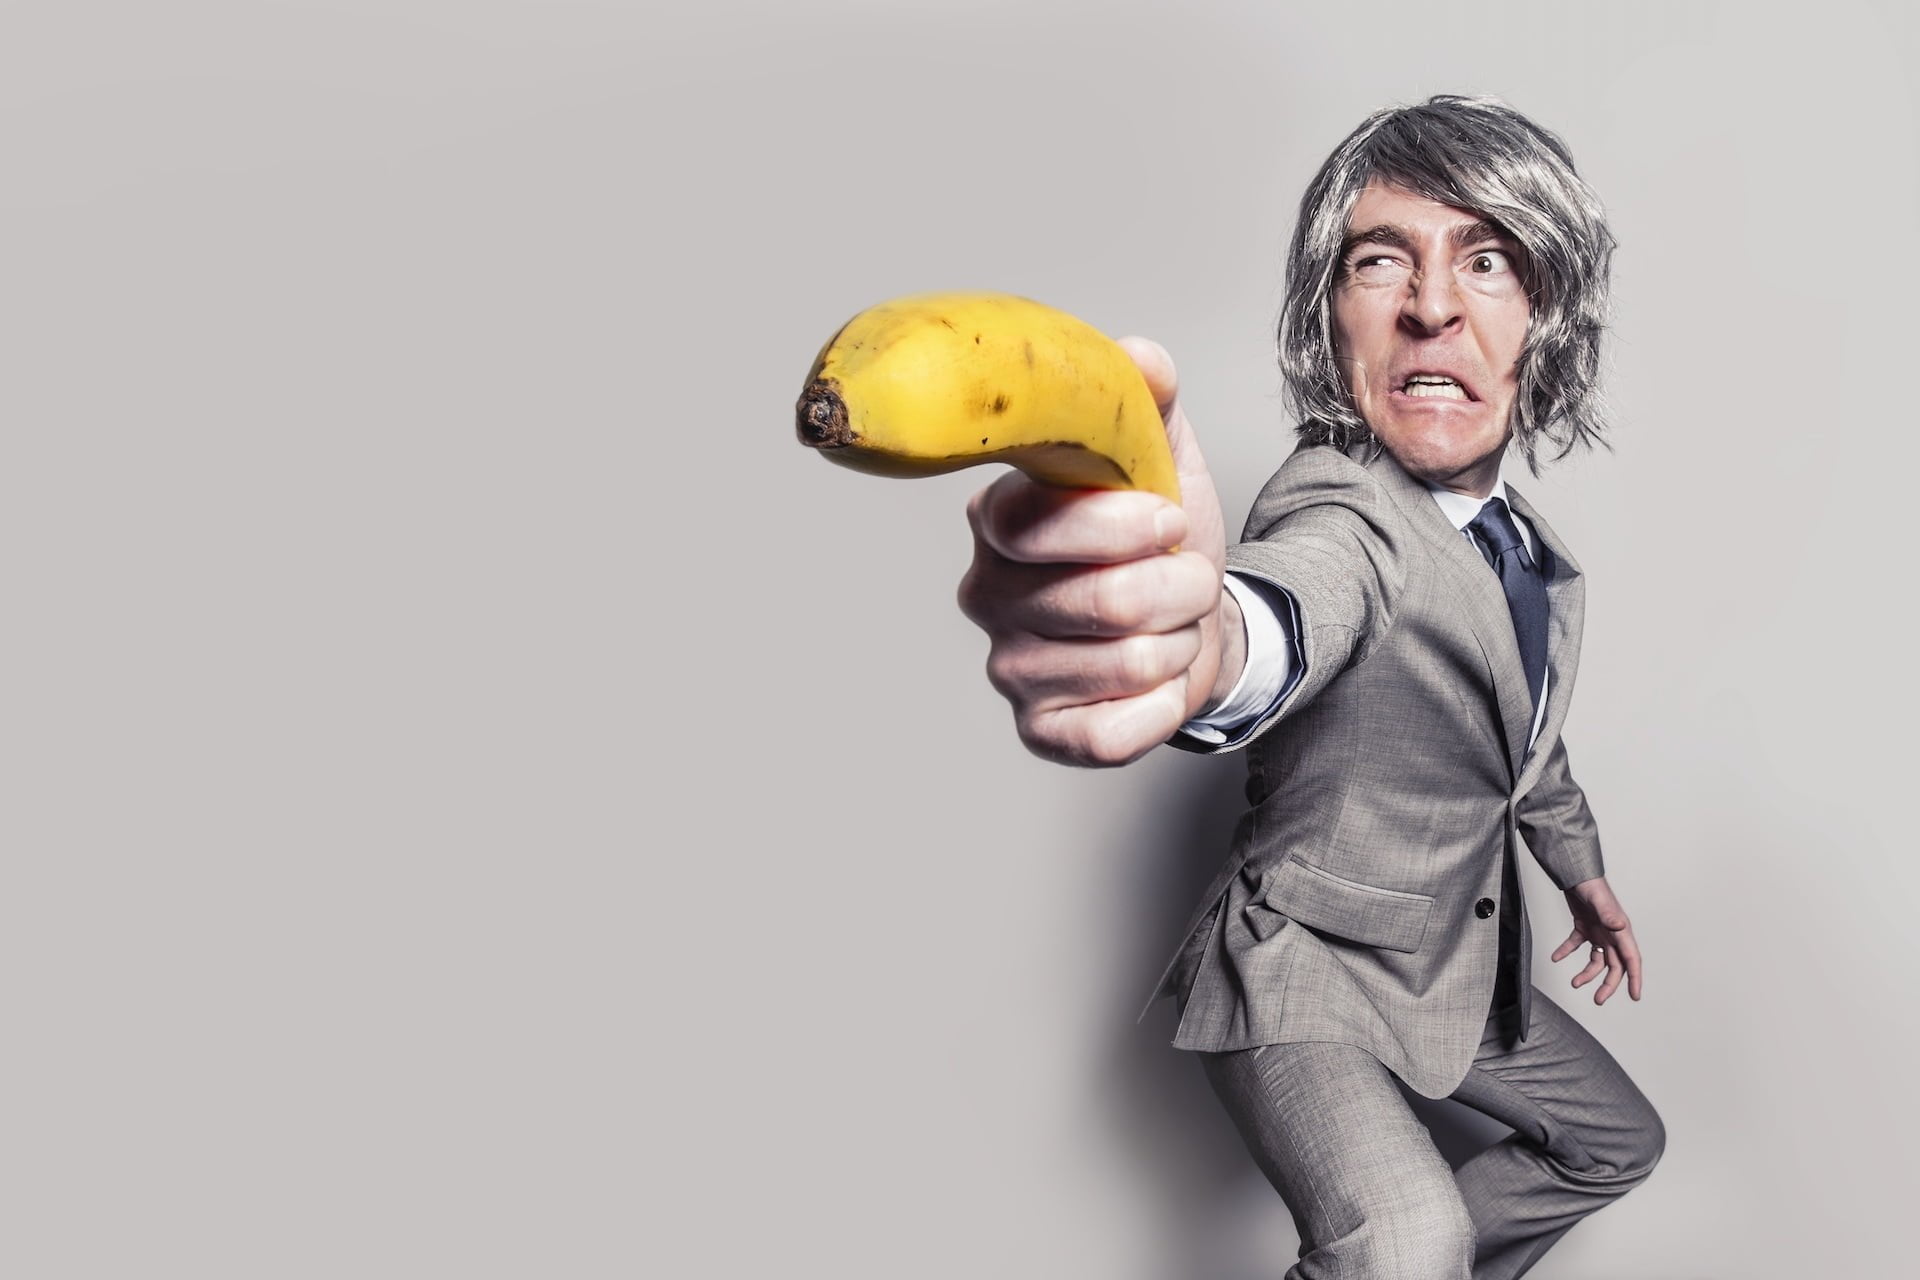 臉書 Facebook 陷阱 一張圖片讓粉絲團秒犯眾怒 小編都該注意的血淚教訓 man in gray suit jacket holding yellow banana fruit while making face